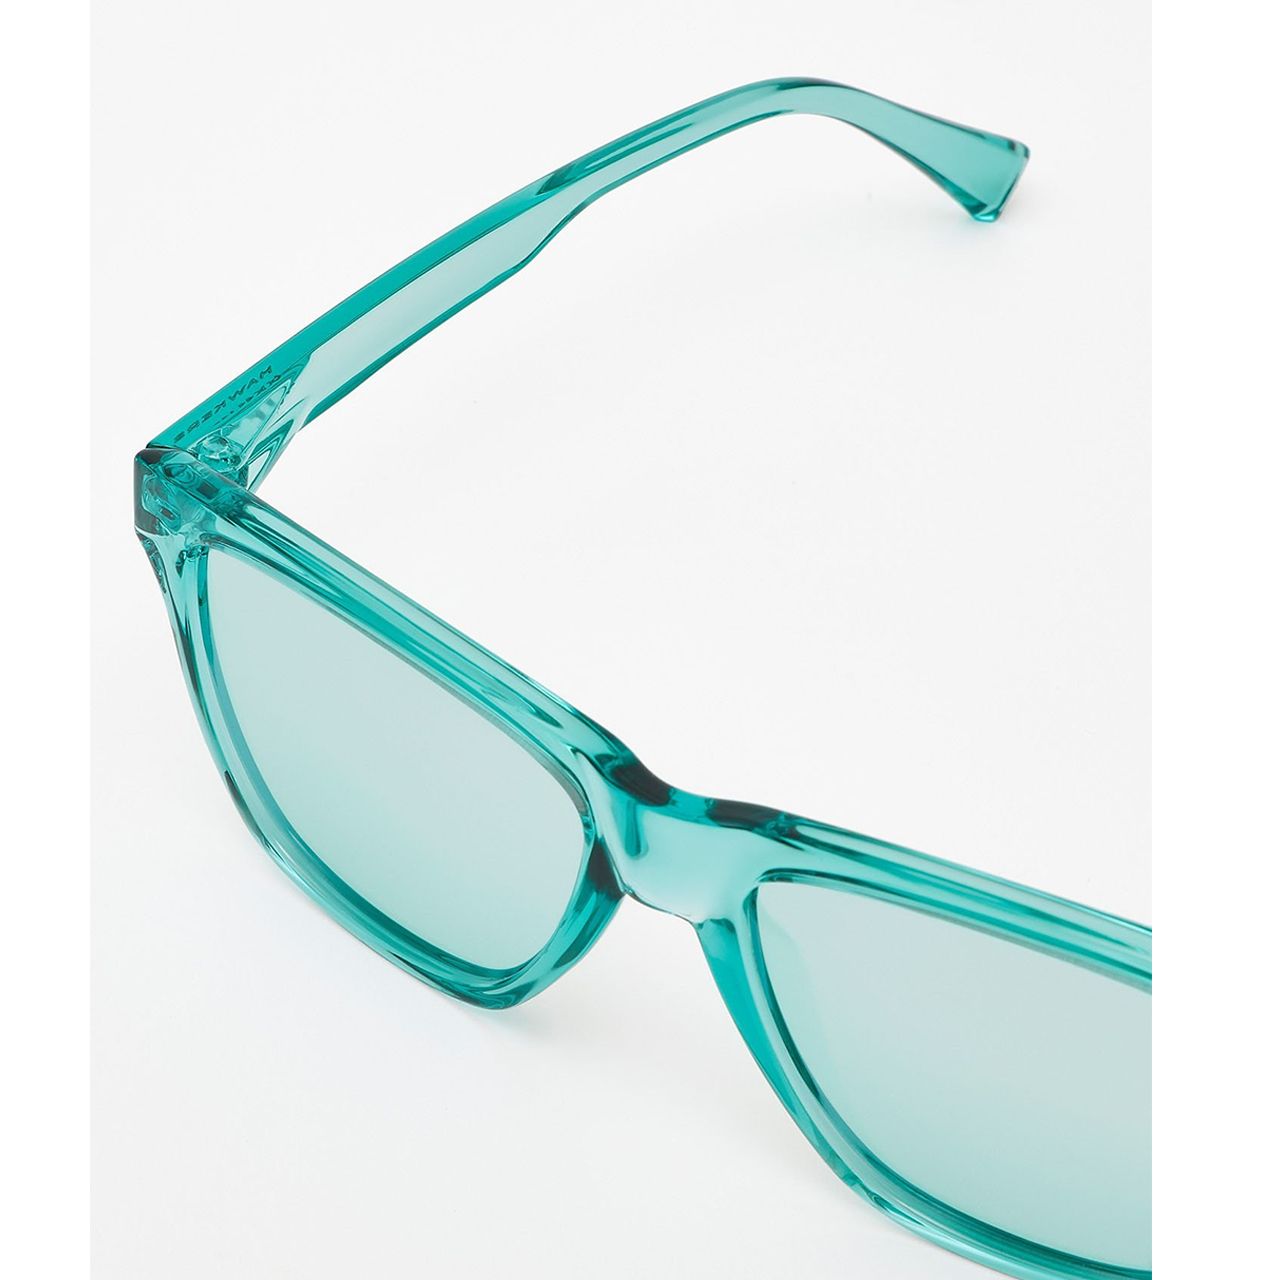  عینک آفتابی زنانه هاوکرز سری Tiffany Blue Chrome One Ls مدل LIFTR13 -  - 6